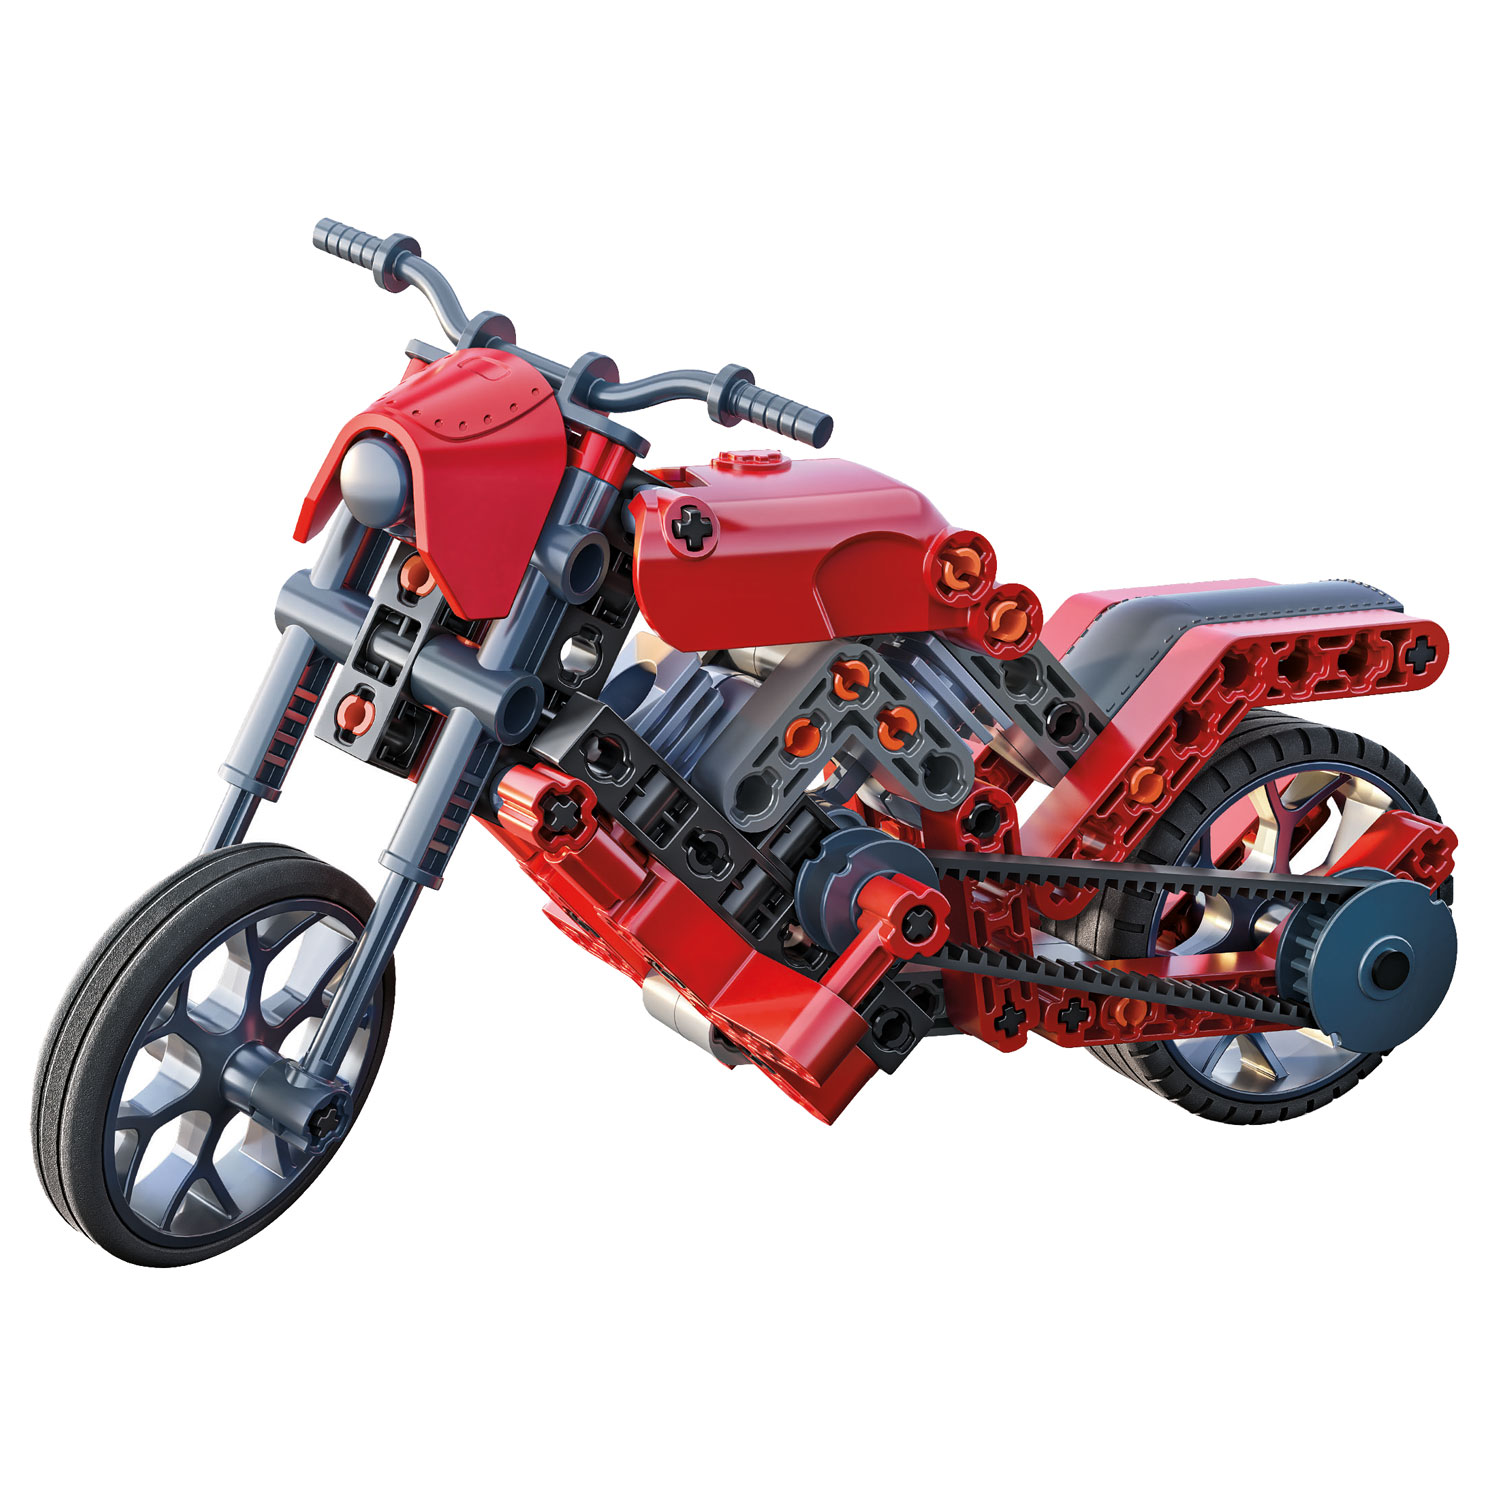 Clementoni Wetenschap & Spel Mechanica - Roadster, 2in1